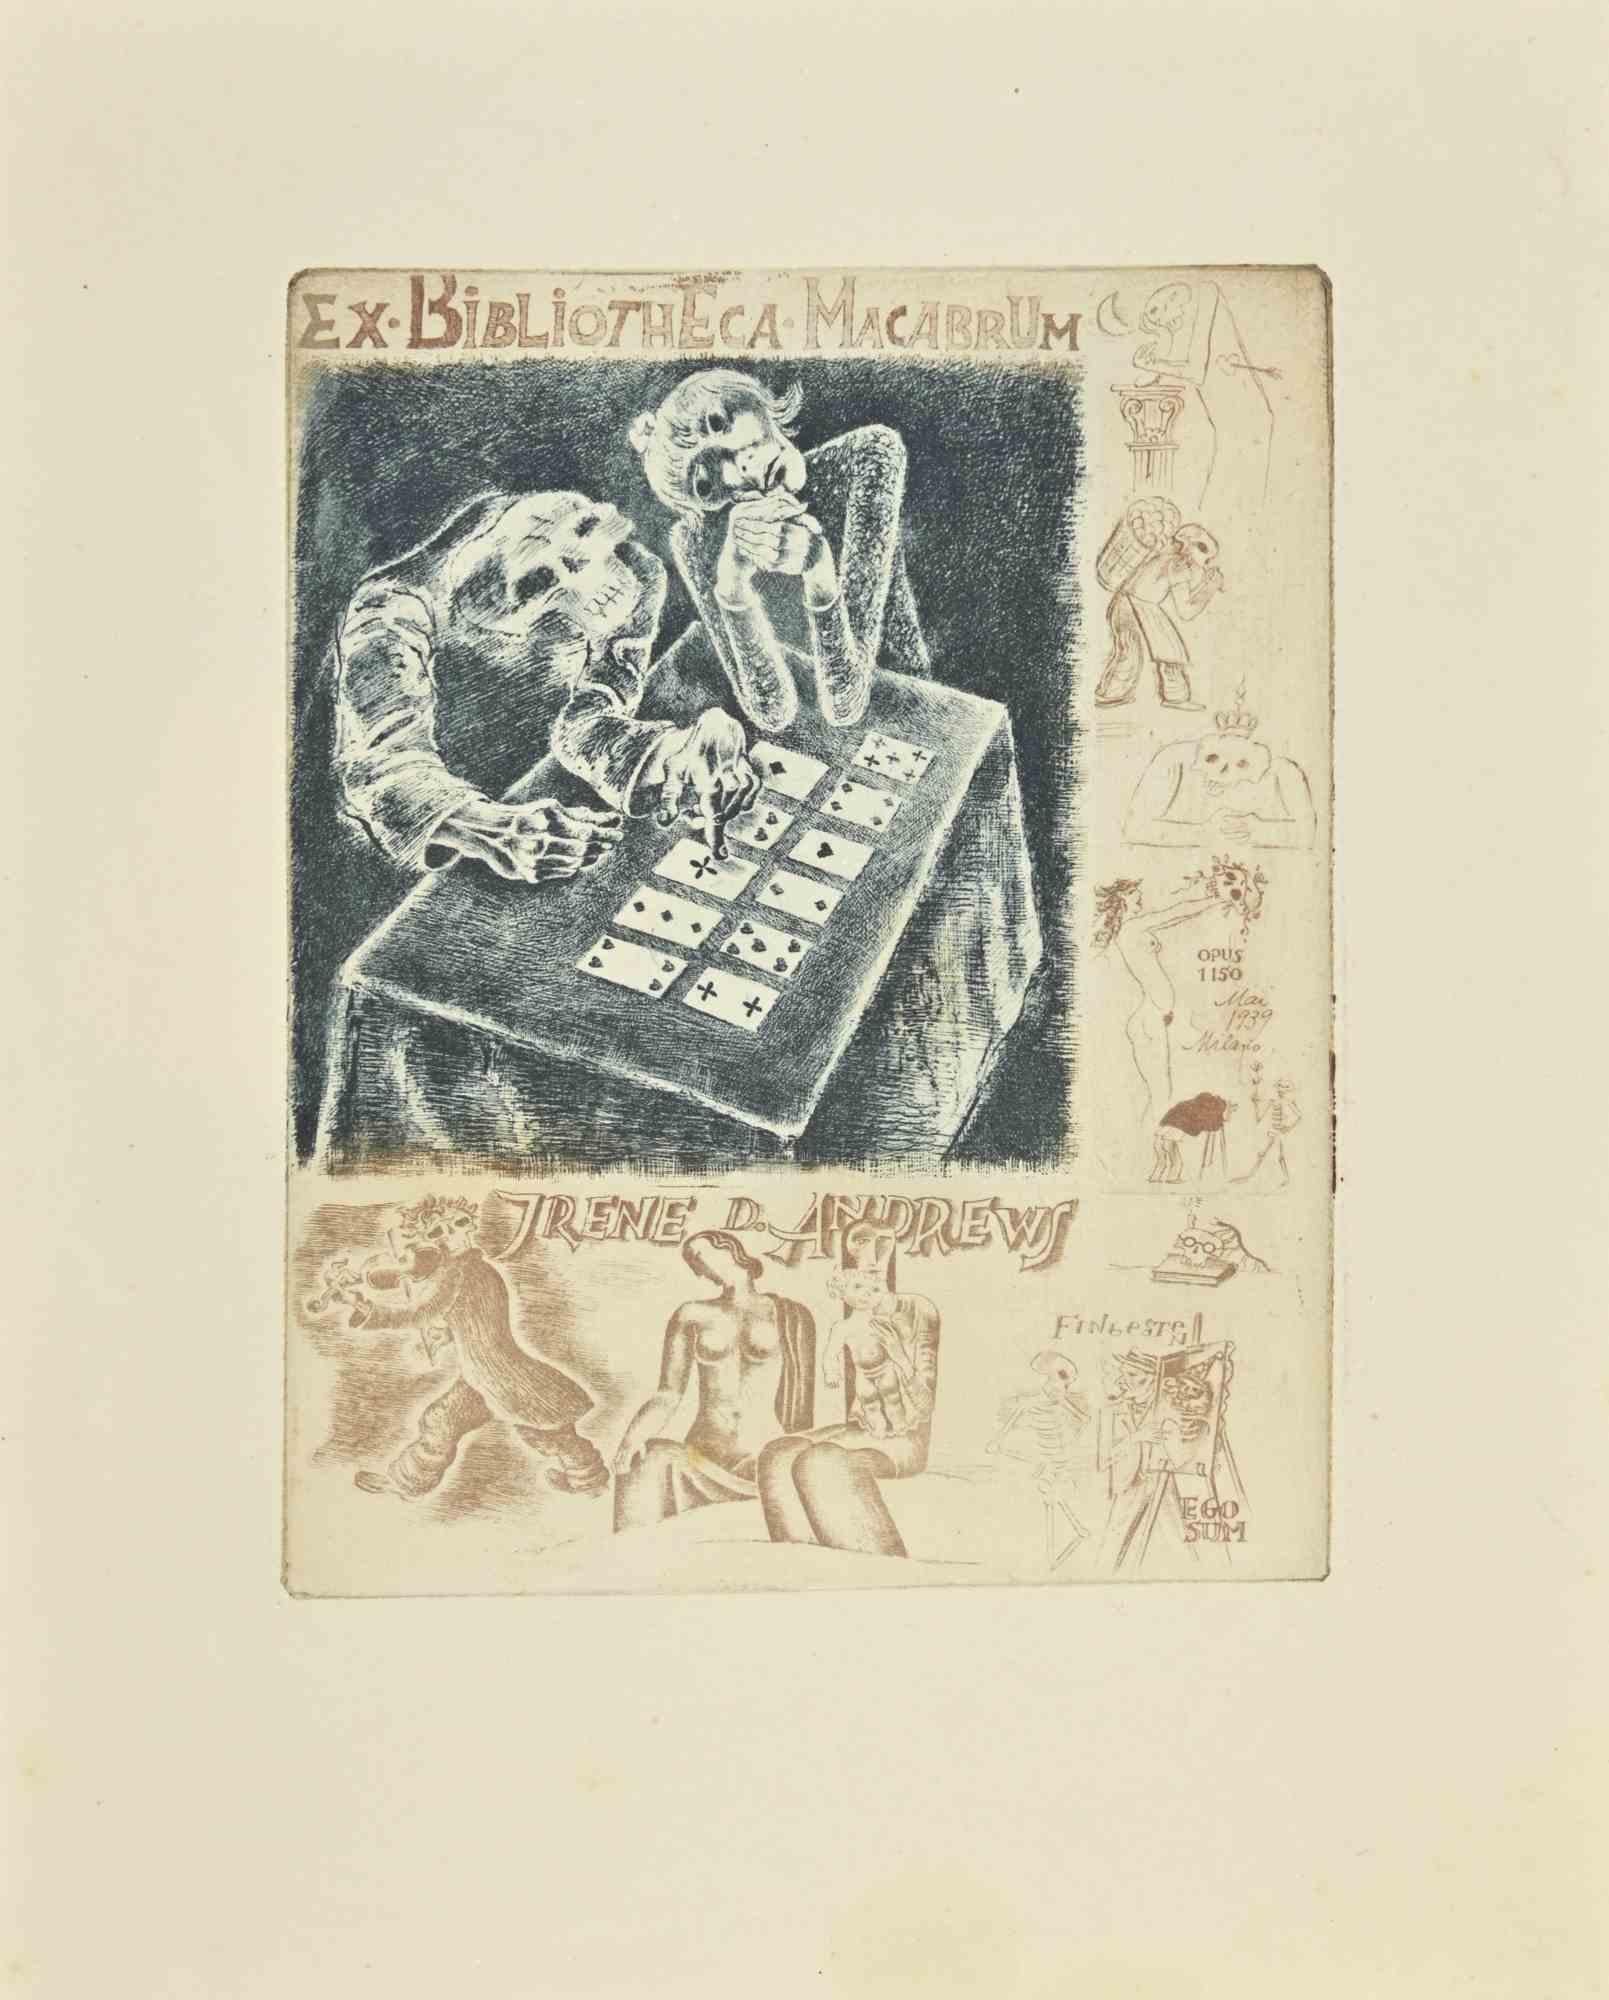 Ex Libris - Ex Bibliotheca Macabrum ist eine Radierung des Künstlers  Michel Fingesten im Jahr 1939.

Gute Bedingungen.

Michel Fingesten (1884 - 1943) war ein tschechischer Maler und Graveur jüdischer Herkunft. Er gilt als einer der größten